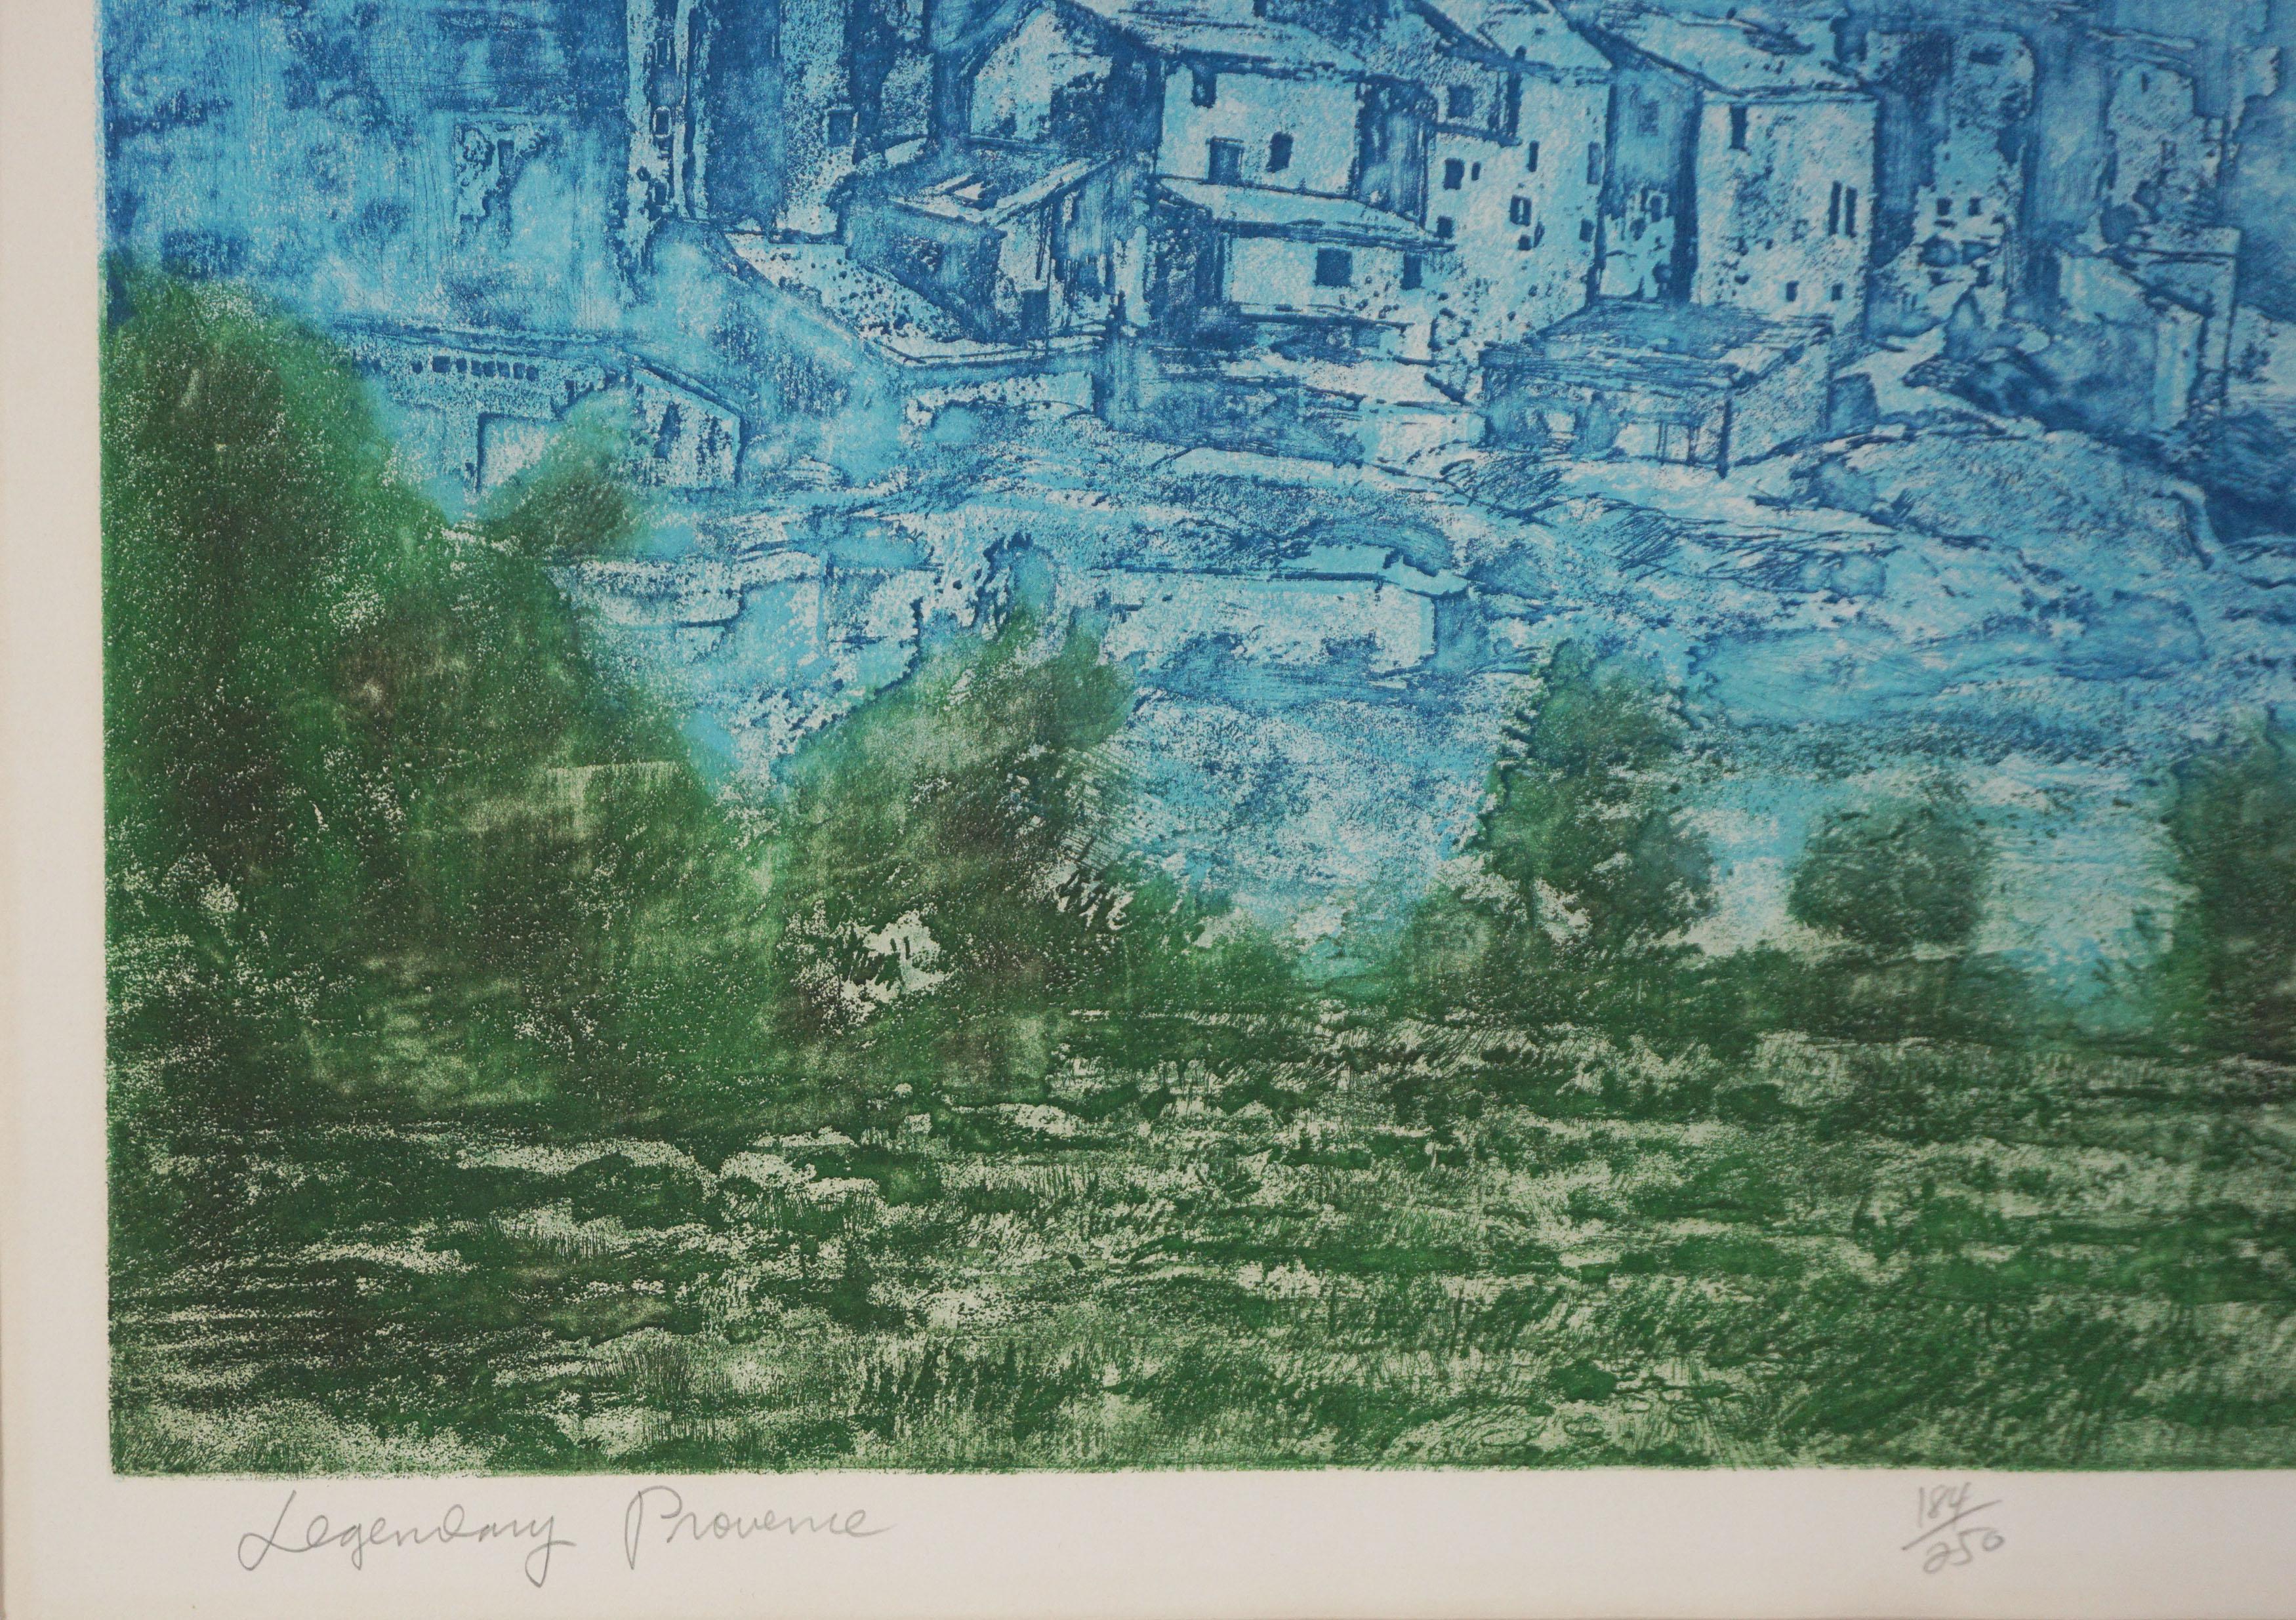 Gravure à l'aquatinte d'art de Provence, France - Légendaire Provence - Impressionnisme américain Print par Ronald Stephen Riddick